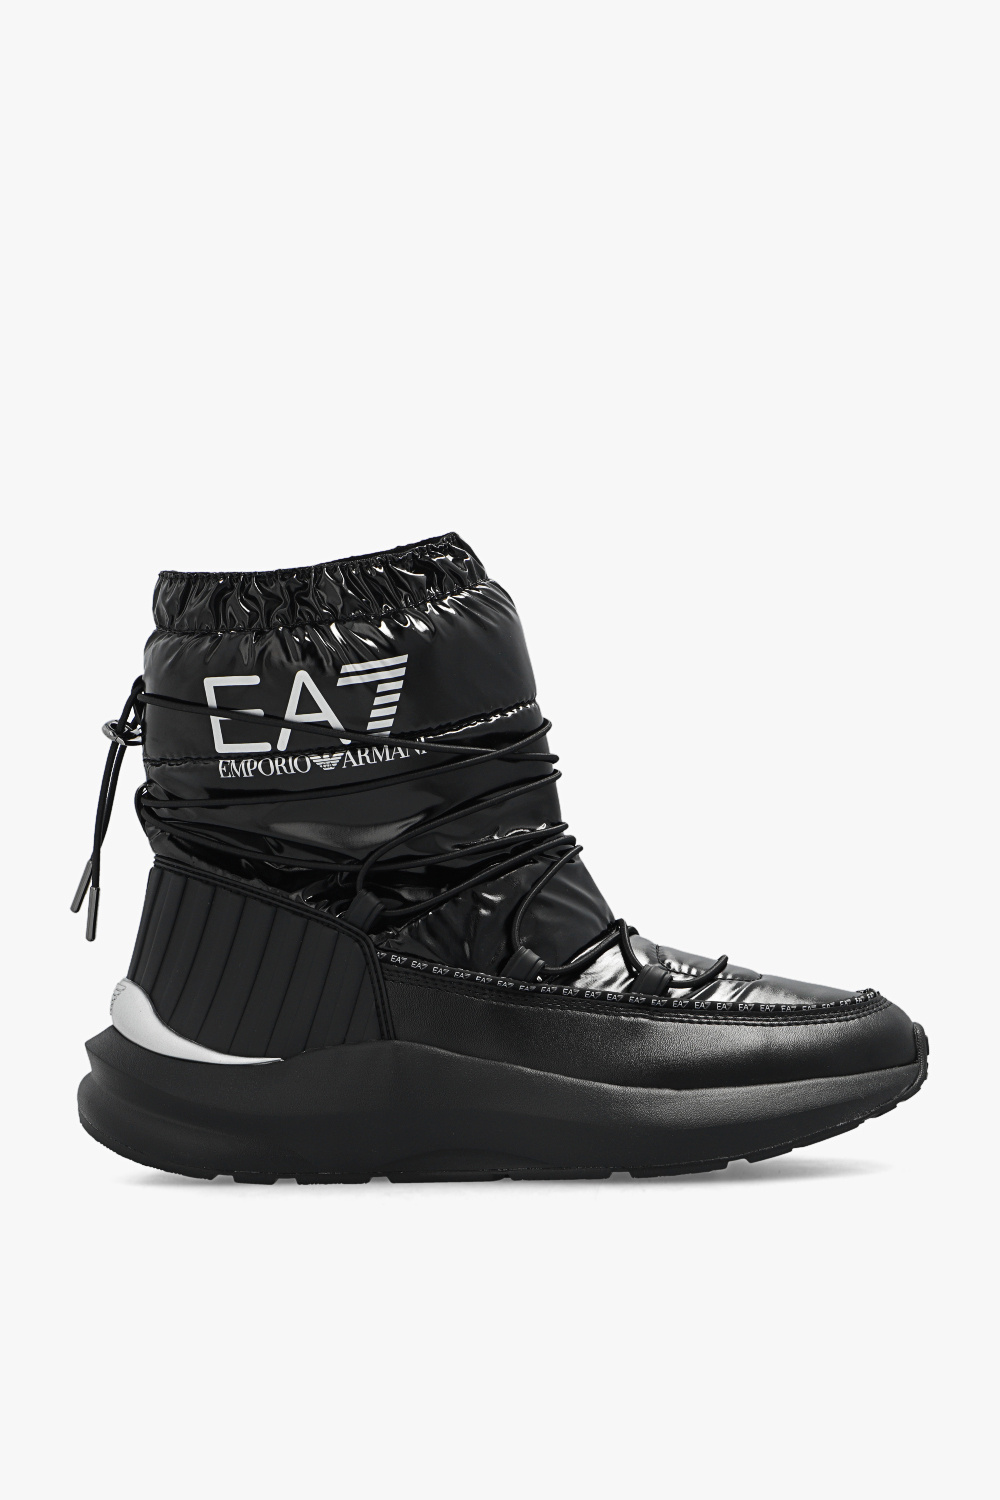 EA7 Emporio armani EG3443221 Snow boots with logo